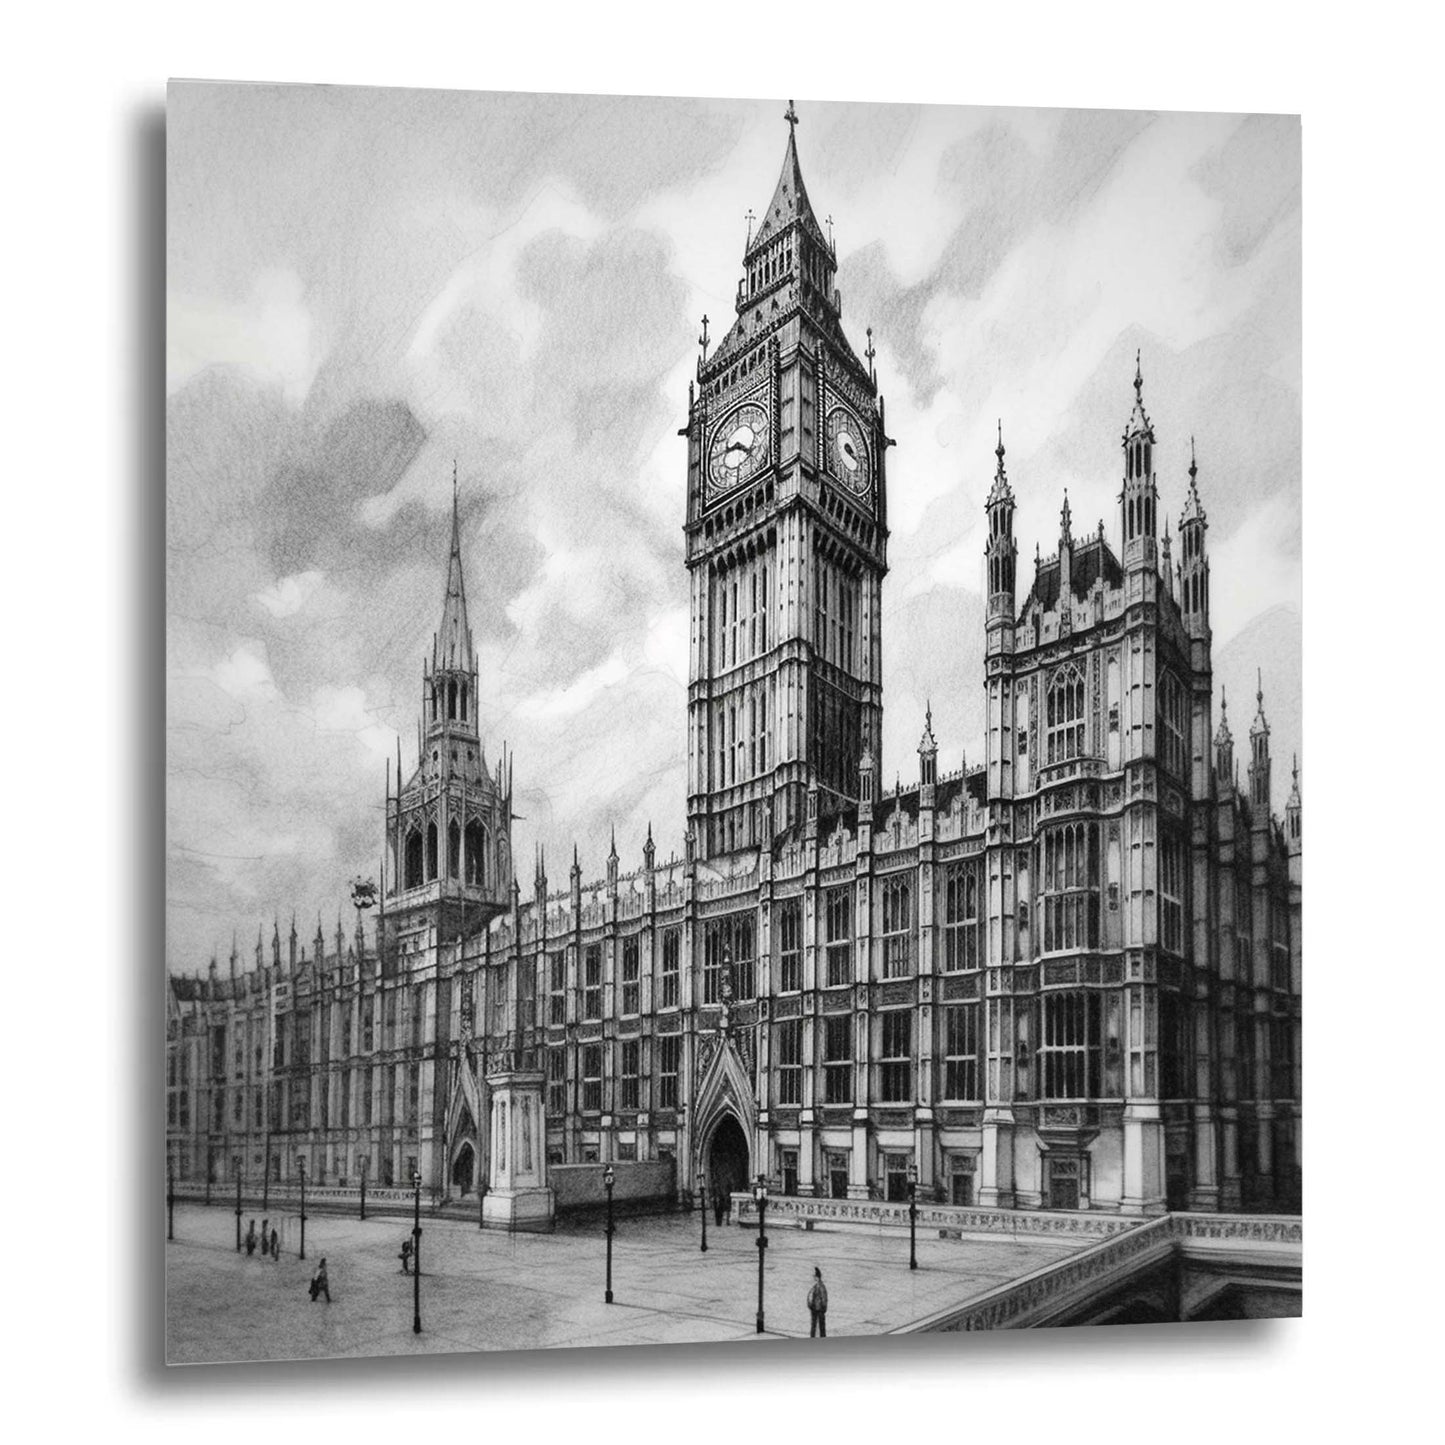 Palais de Westminster de Londres - peinture murale dans le style d'un dessin